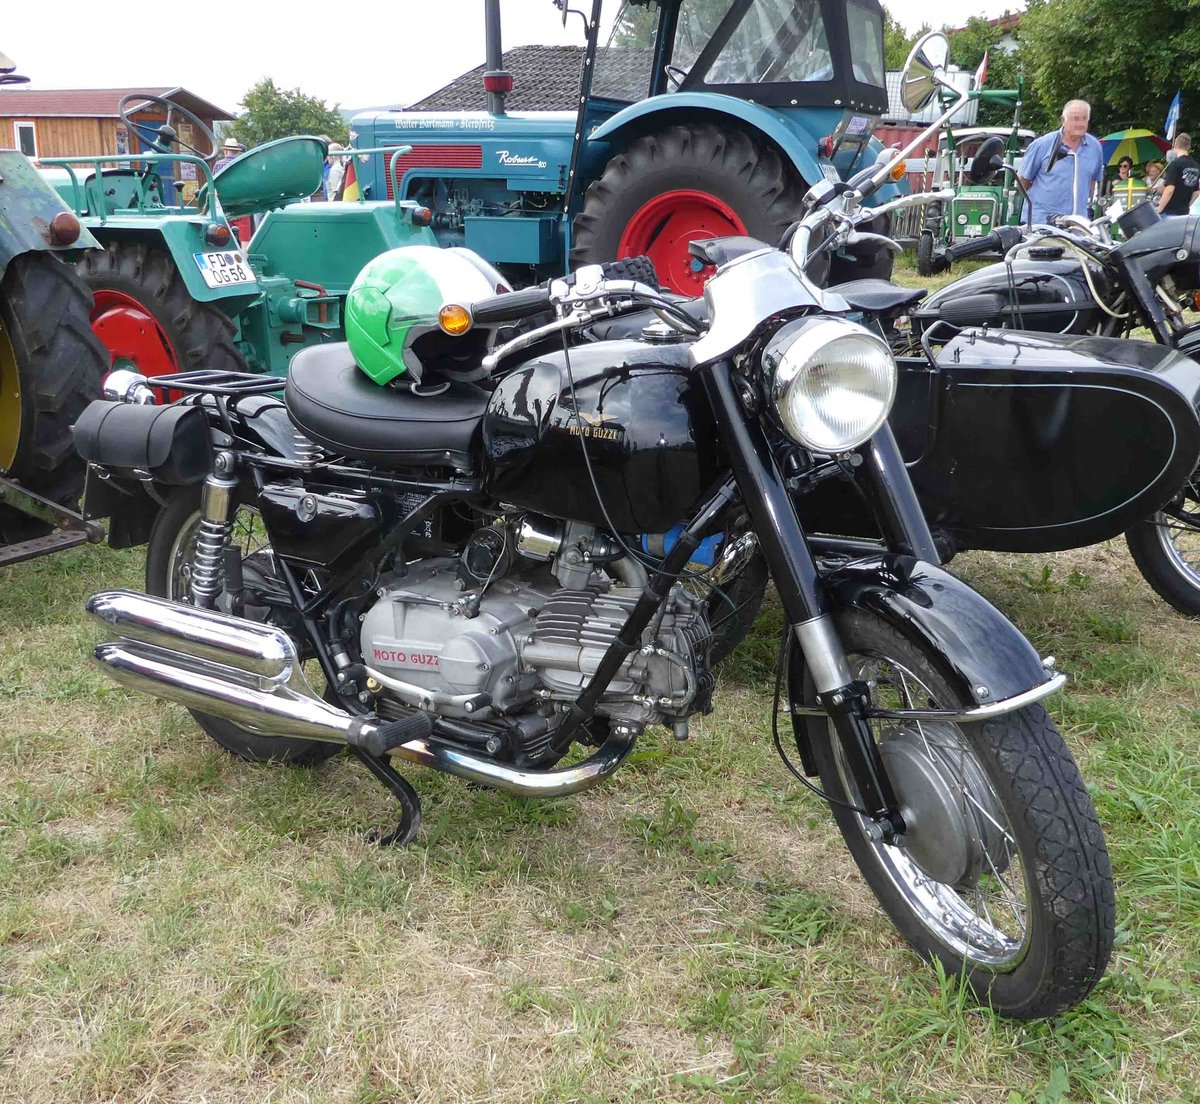 =Moto Guzzi, ausgestellt bei der Oldtimerausstellung in Uttrichshausen, 07-2019